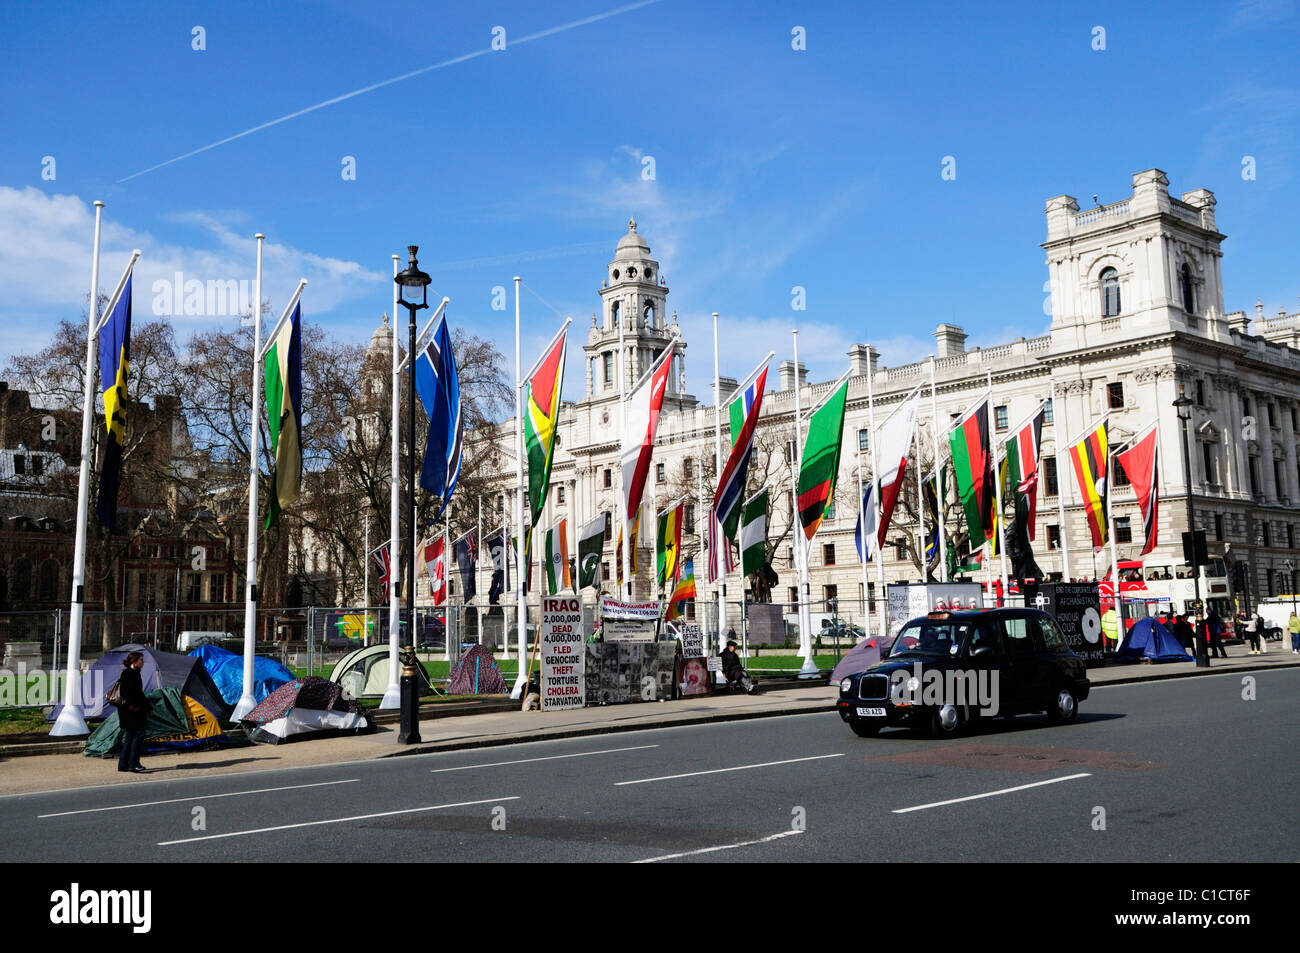 La plaza del parlamento con manifestantes anti guerra y banderas, Westminster Londres, Inglaterra, Reino Unido. Foto de stock